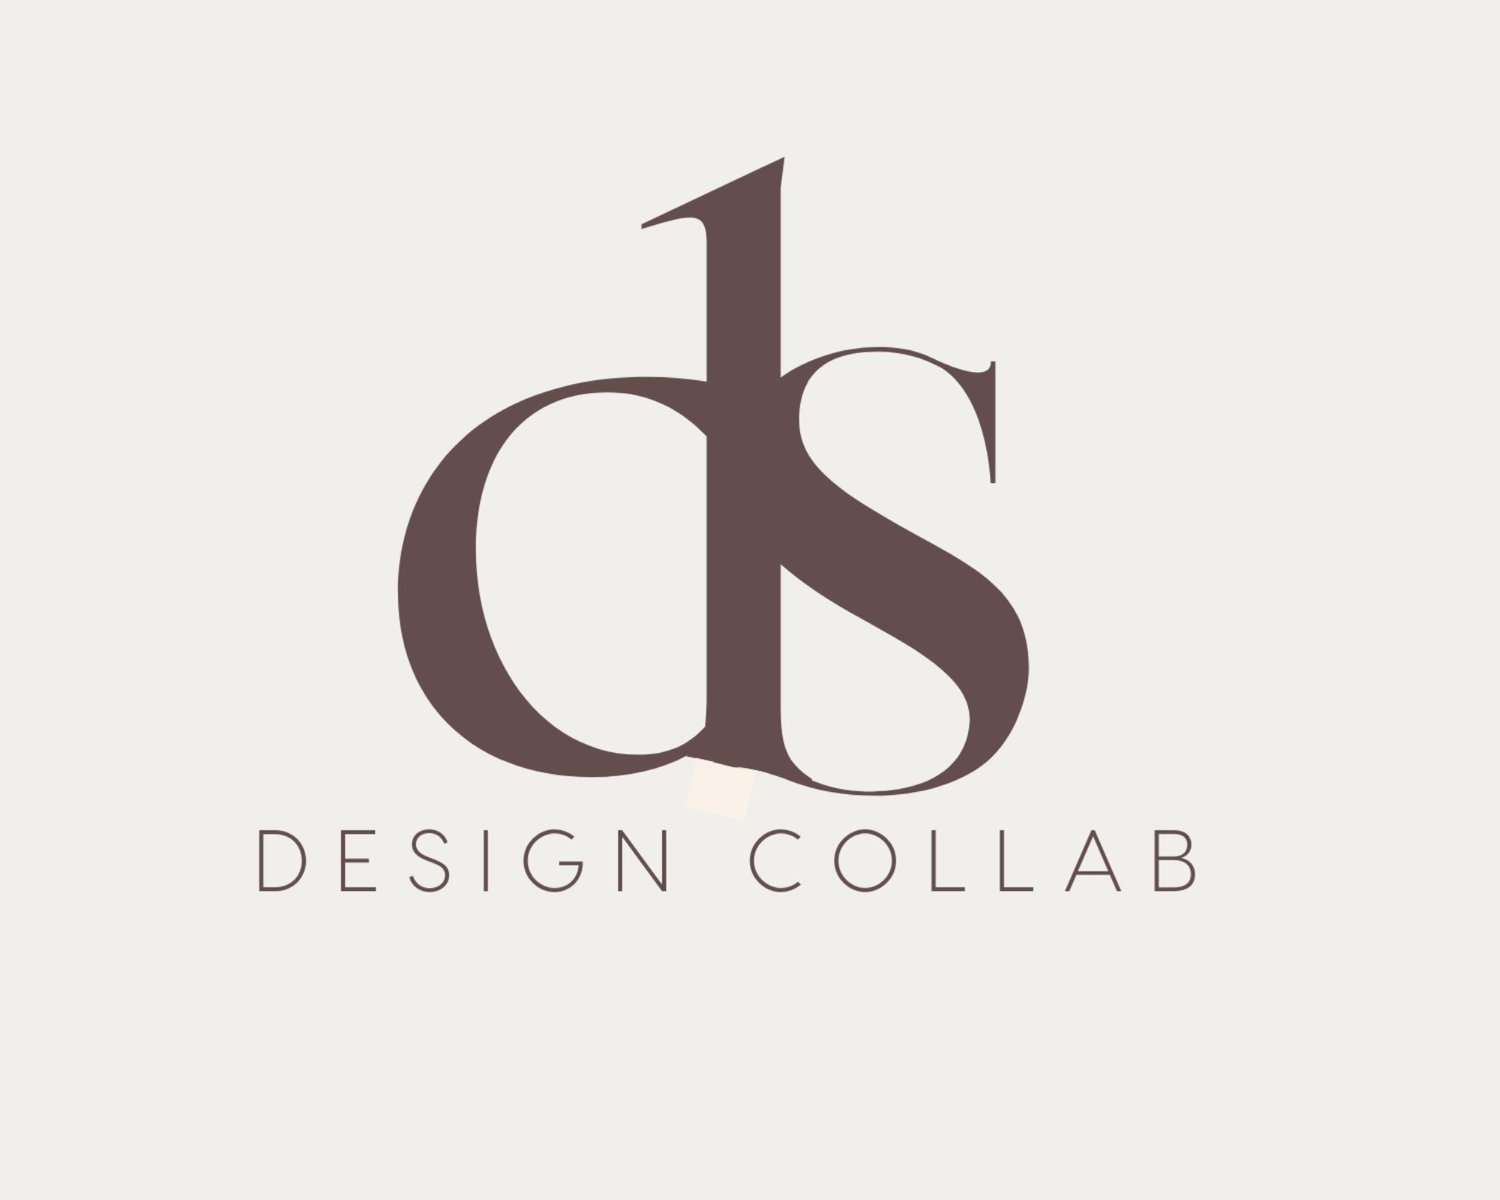 DS Design Collab